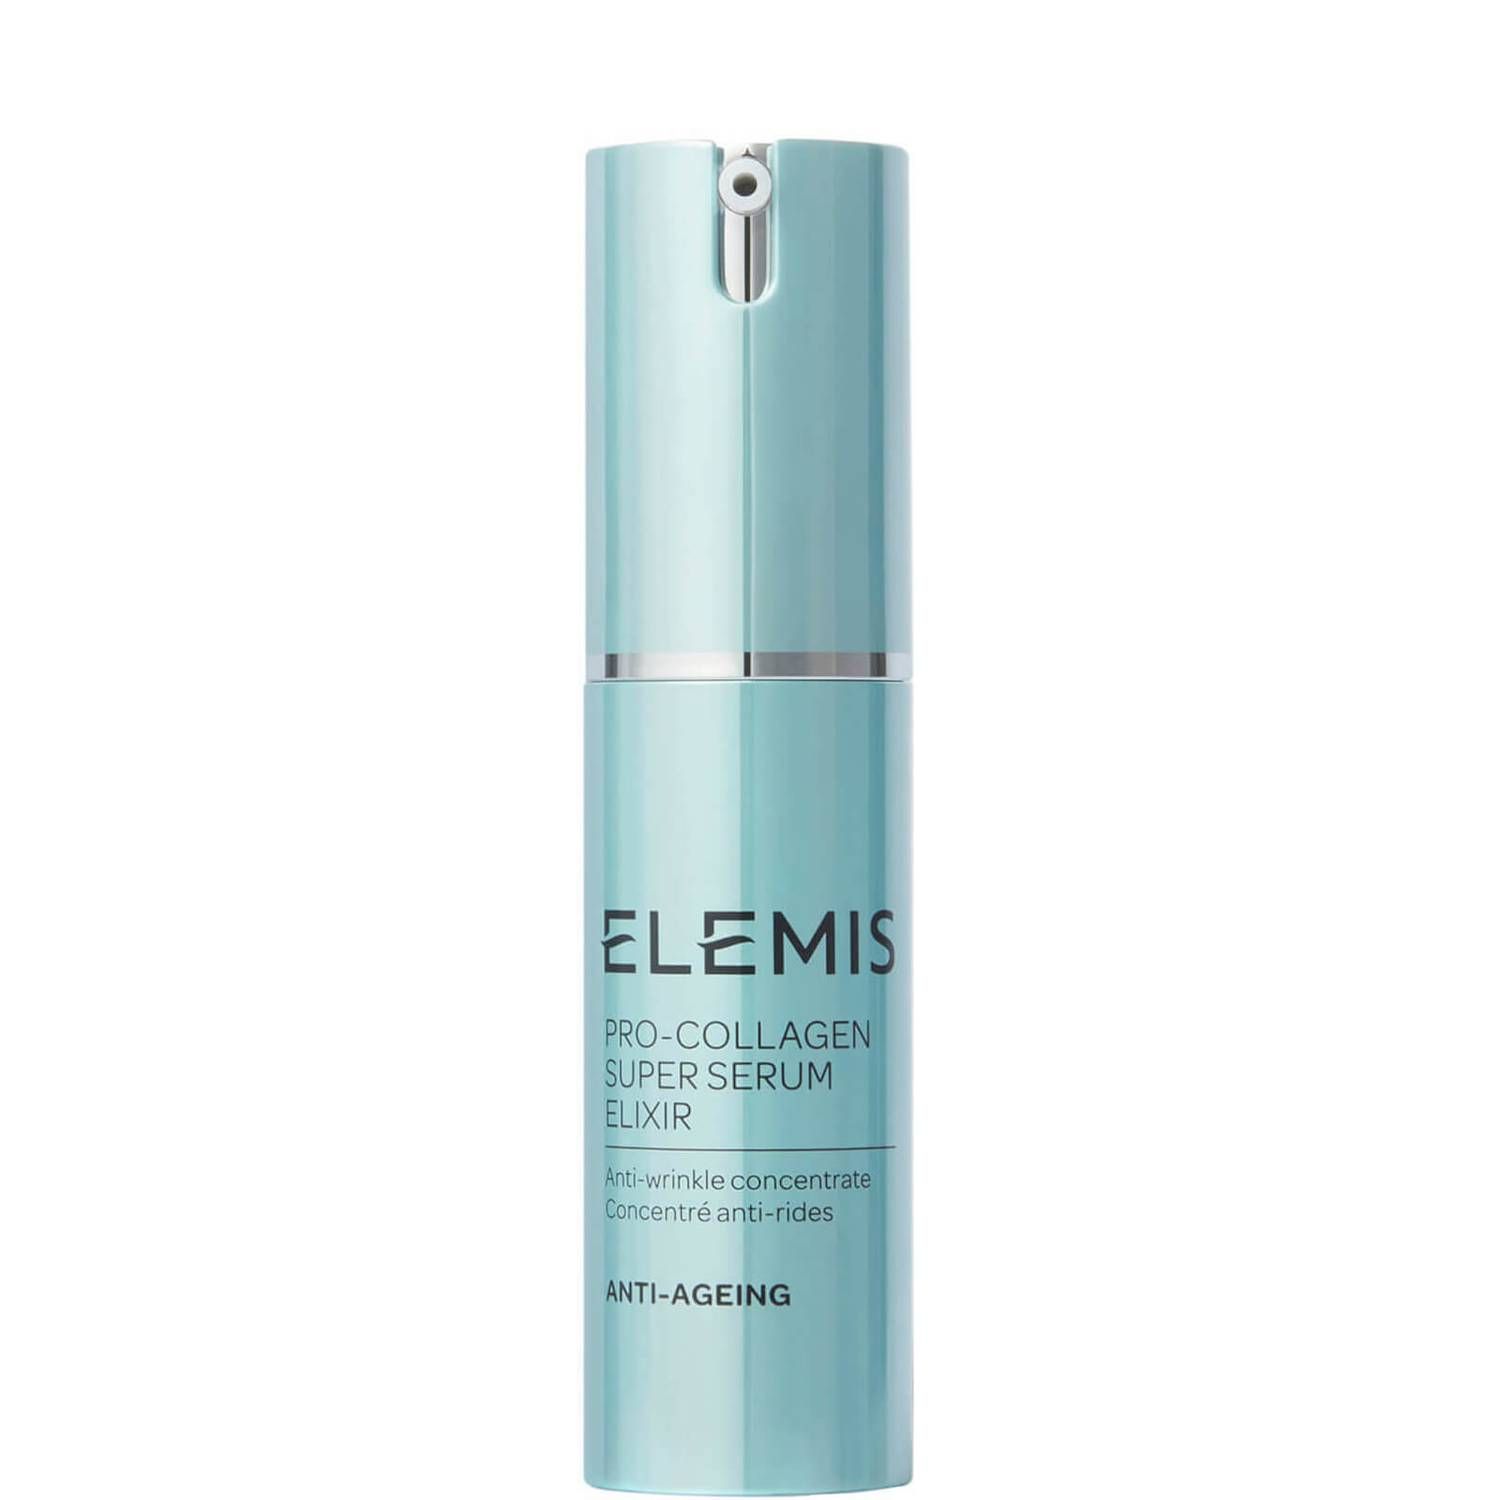 ELEMIS Pro-Collagen Super Serum Elixir (0.5 fl. oz.) | Dermstore (US)